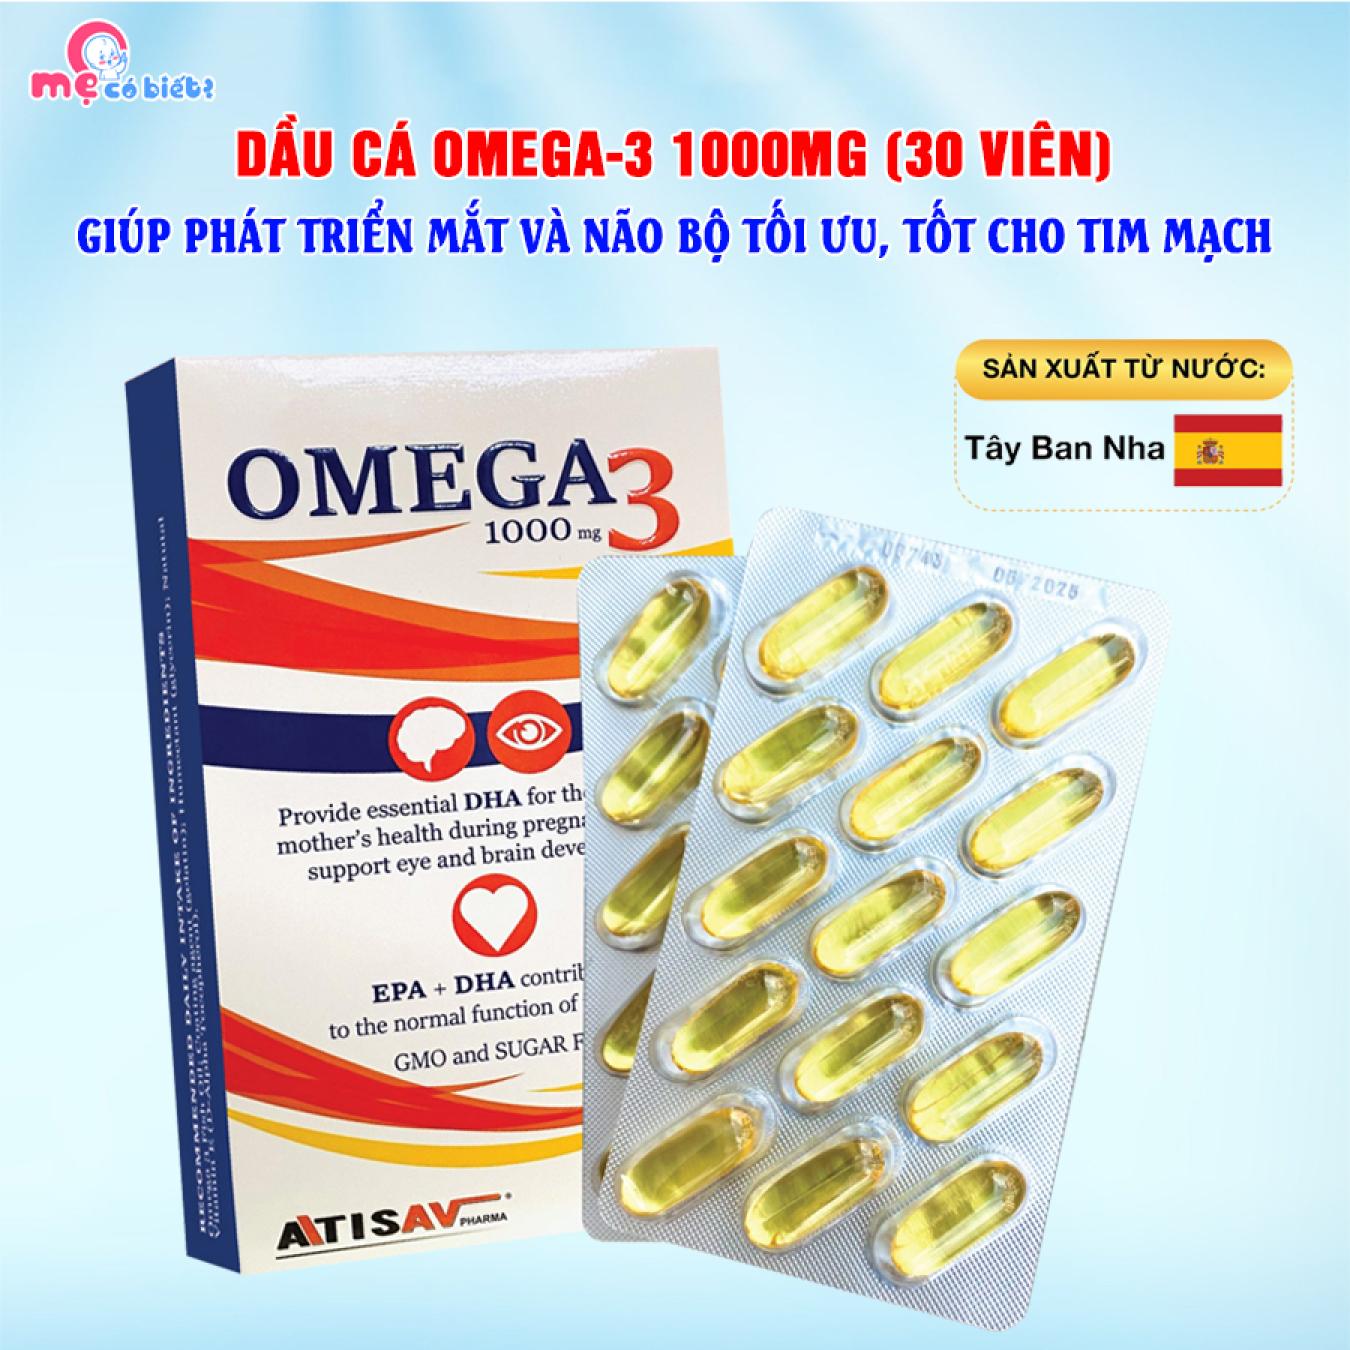 Dầu cá Omega-3 1000MG - Giúp phát triển não bộ, tốt cho mắt và tim mạch